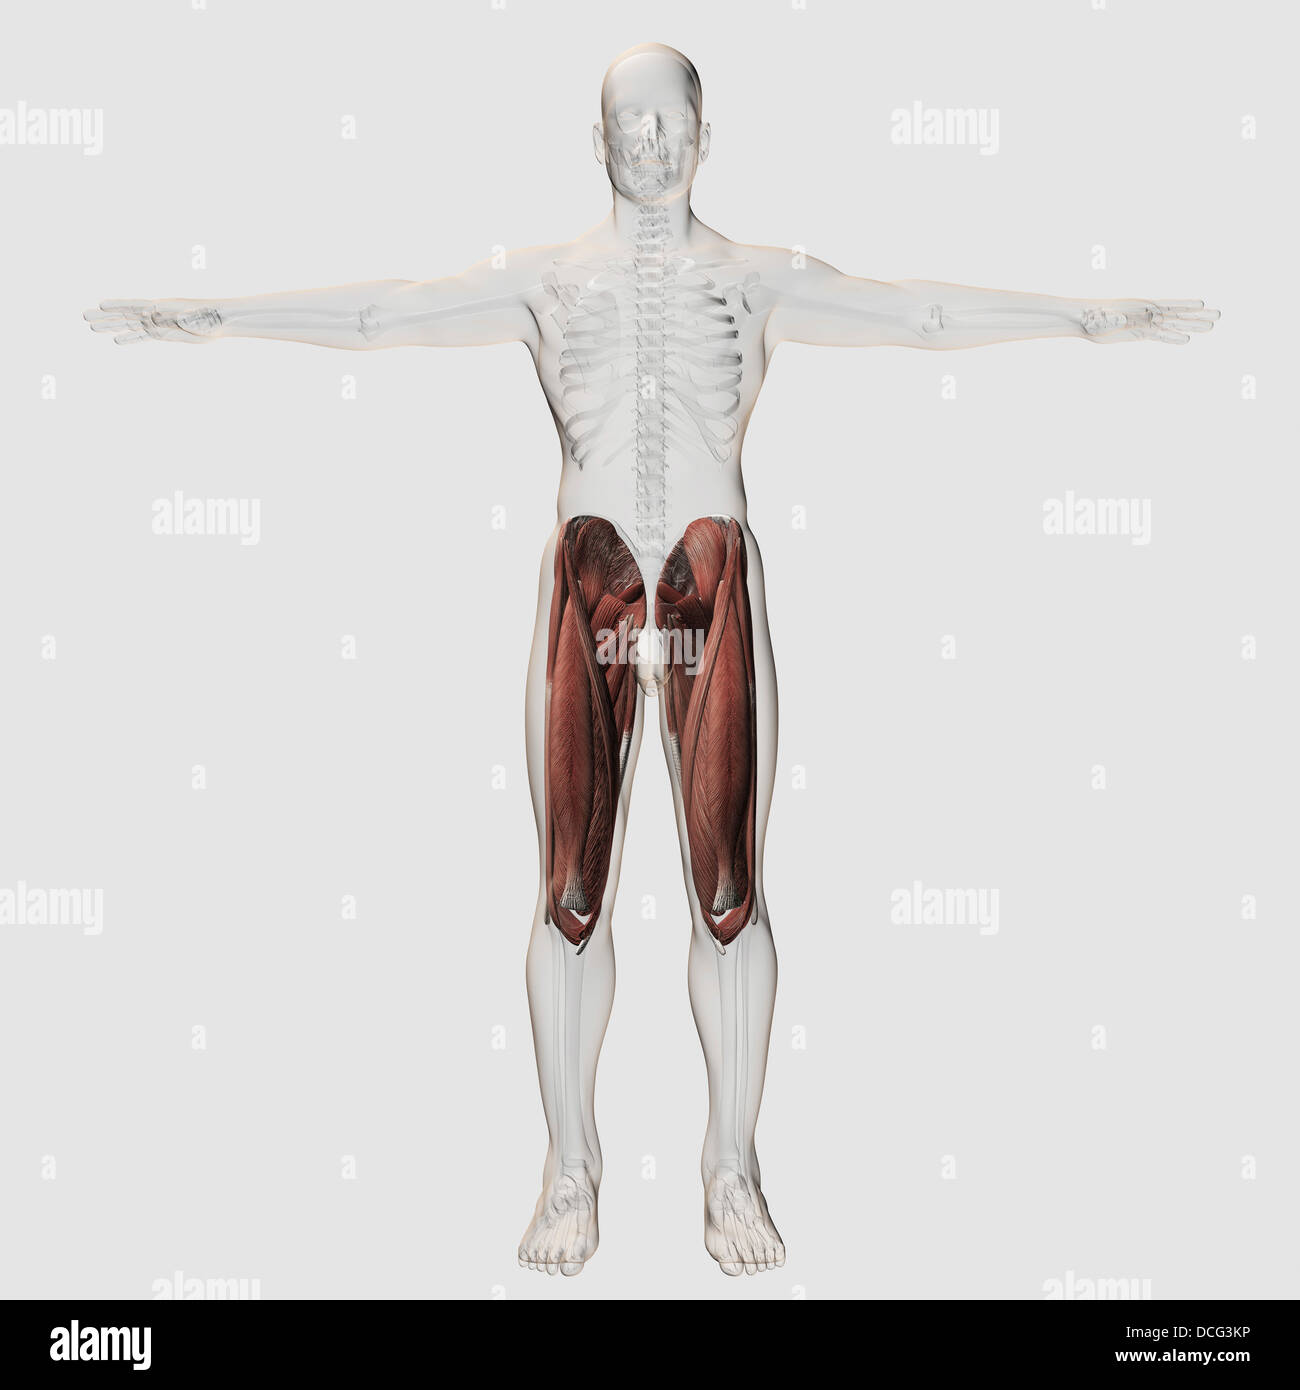 Maschio anatomia muscolare delle gambe umane, vista anteriore. Foto Stock